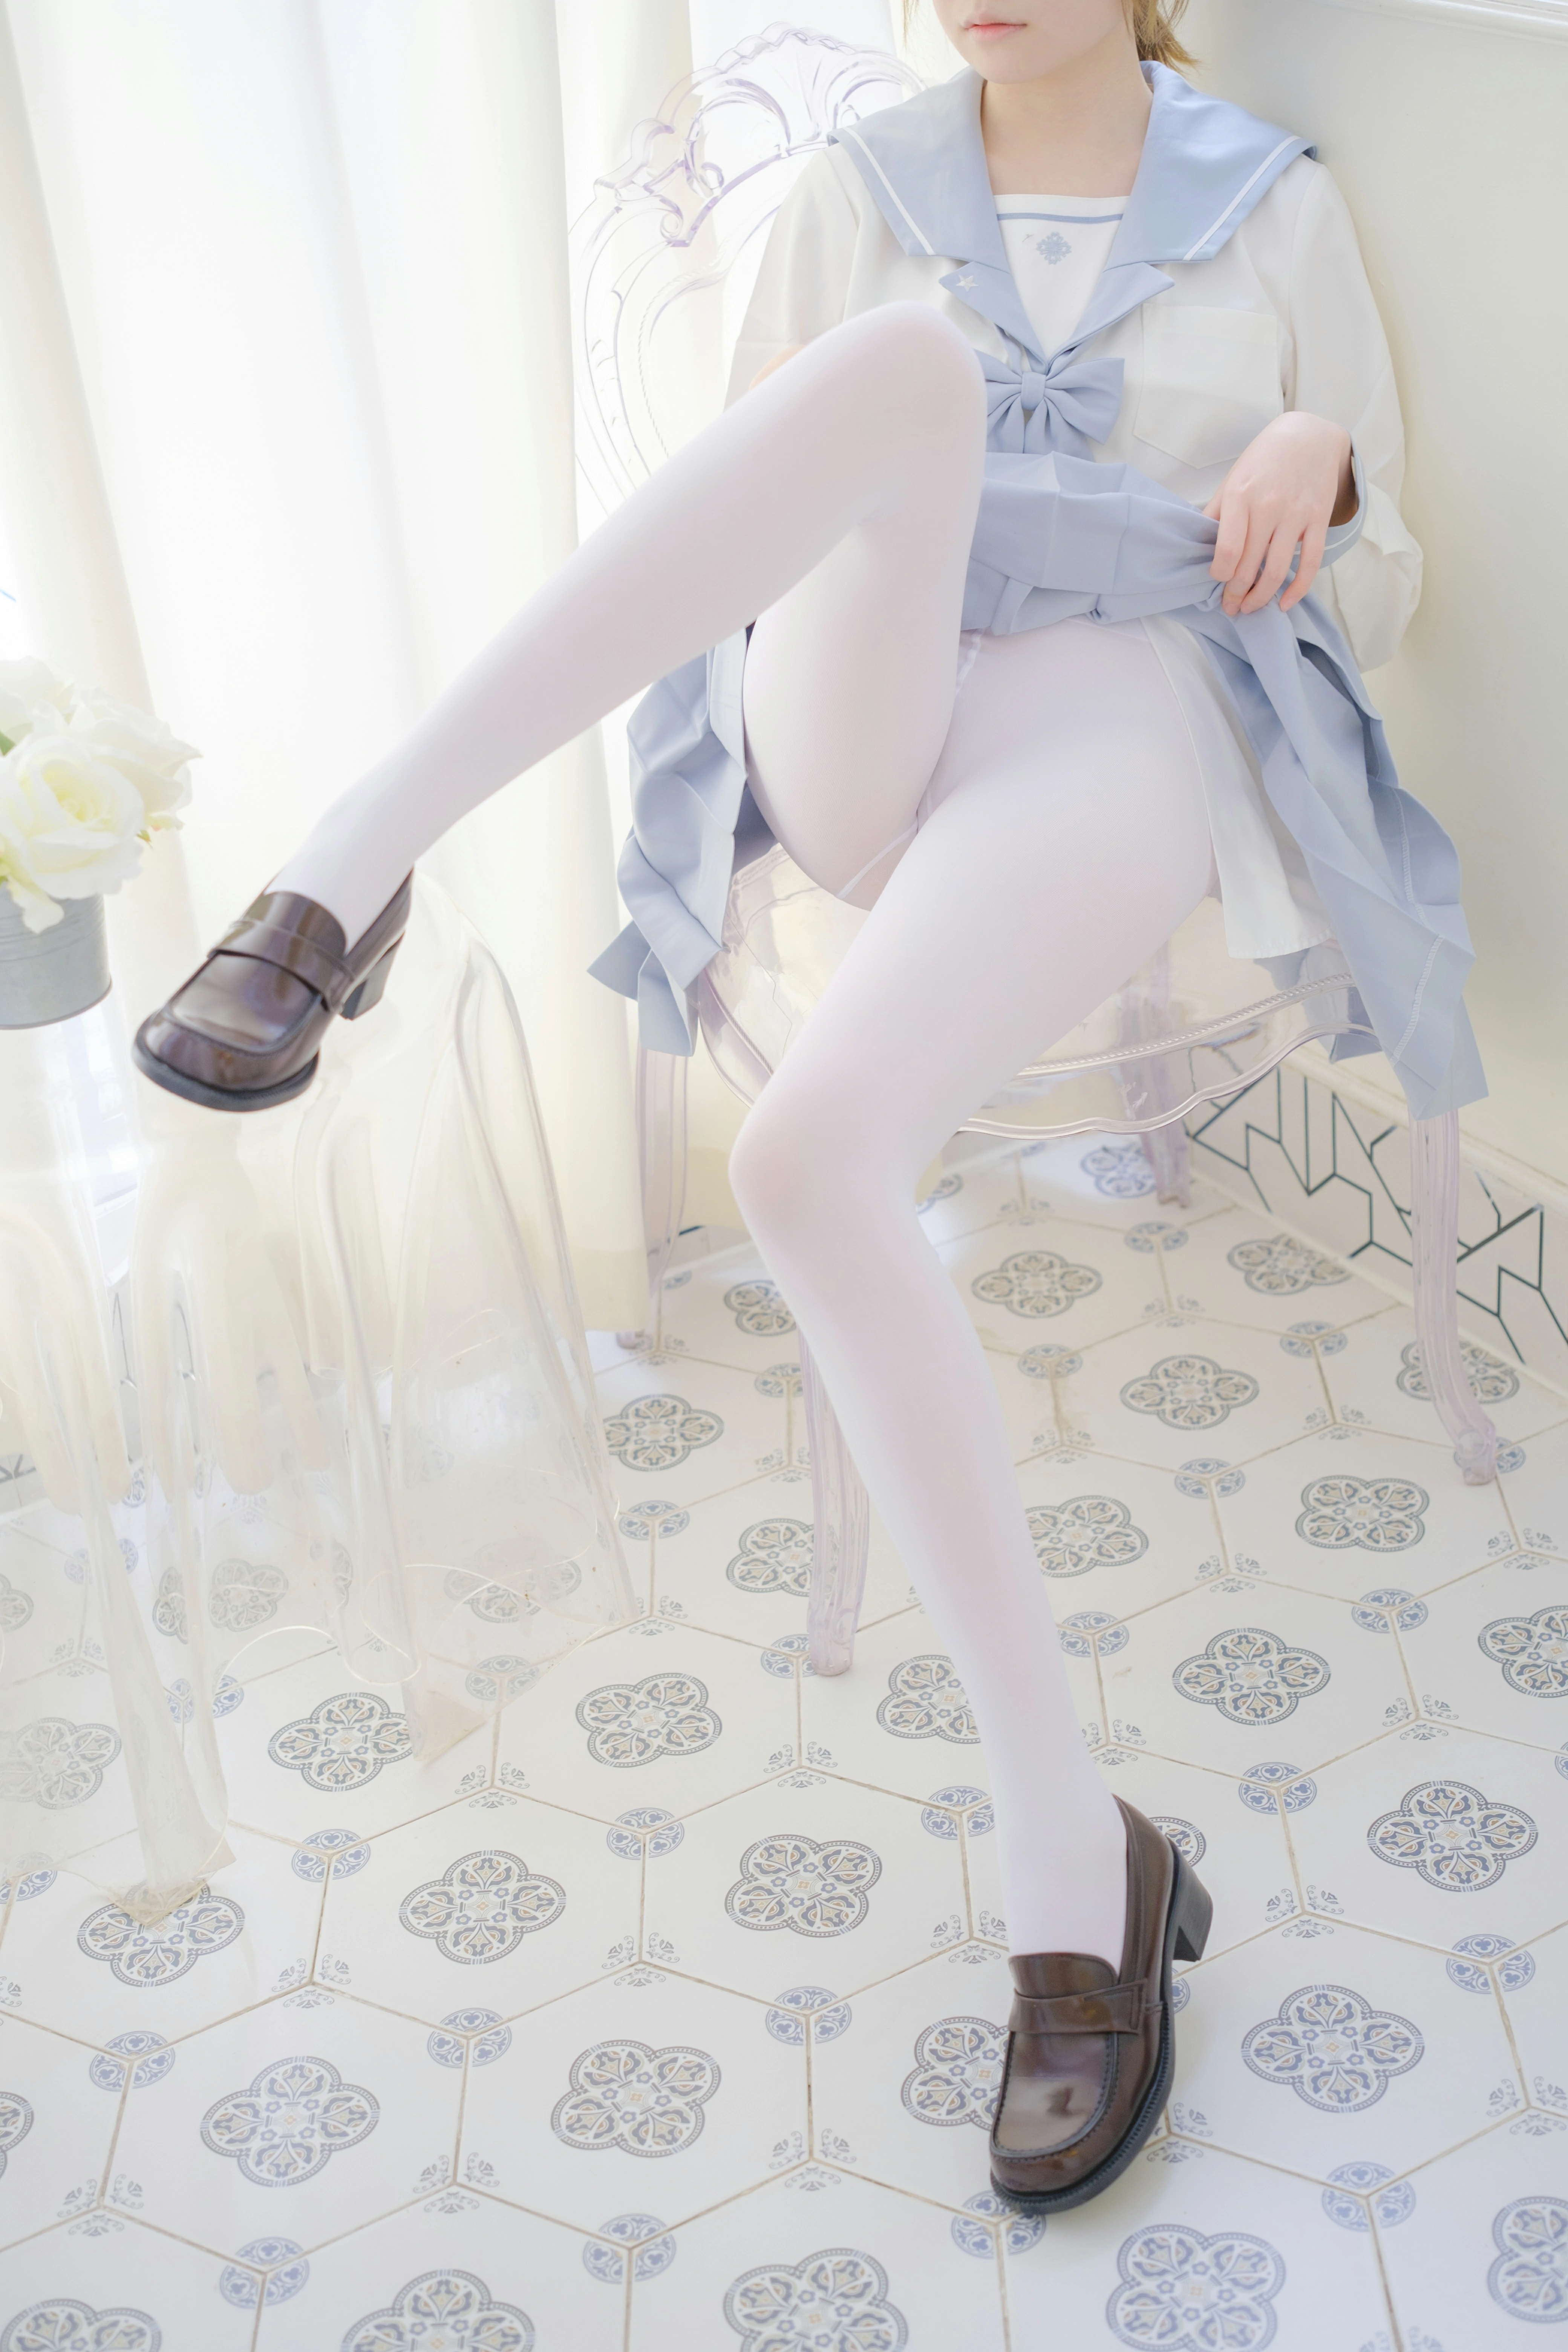 [森萝财团]内部VIP系列 微风-04 少女萝莉小学妹 白色JK制服与蓝色短裙加白色丝袜美腿私房写真集,0024